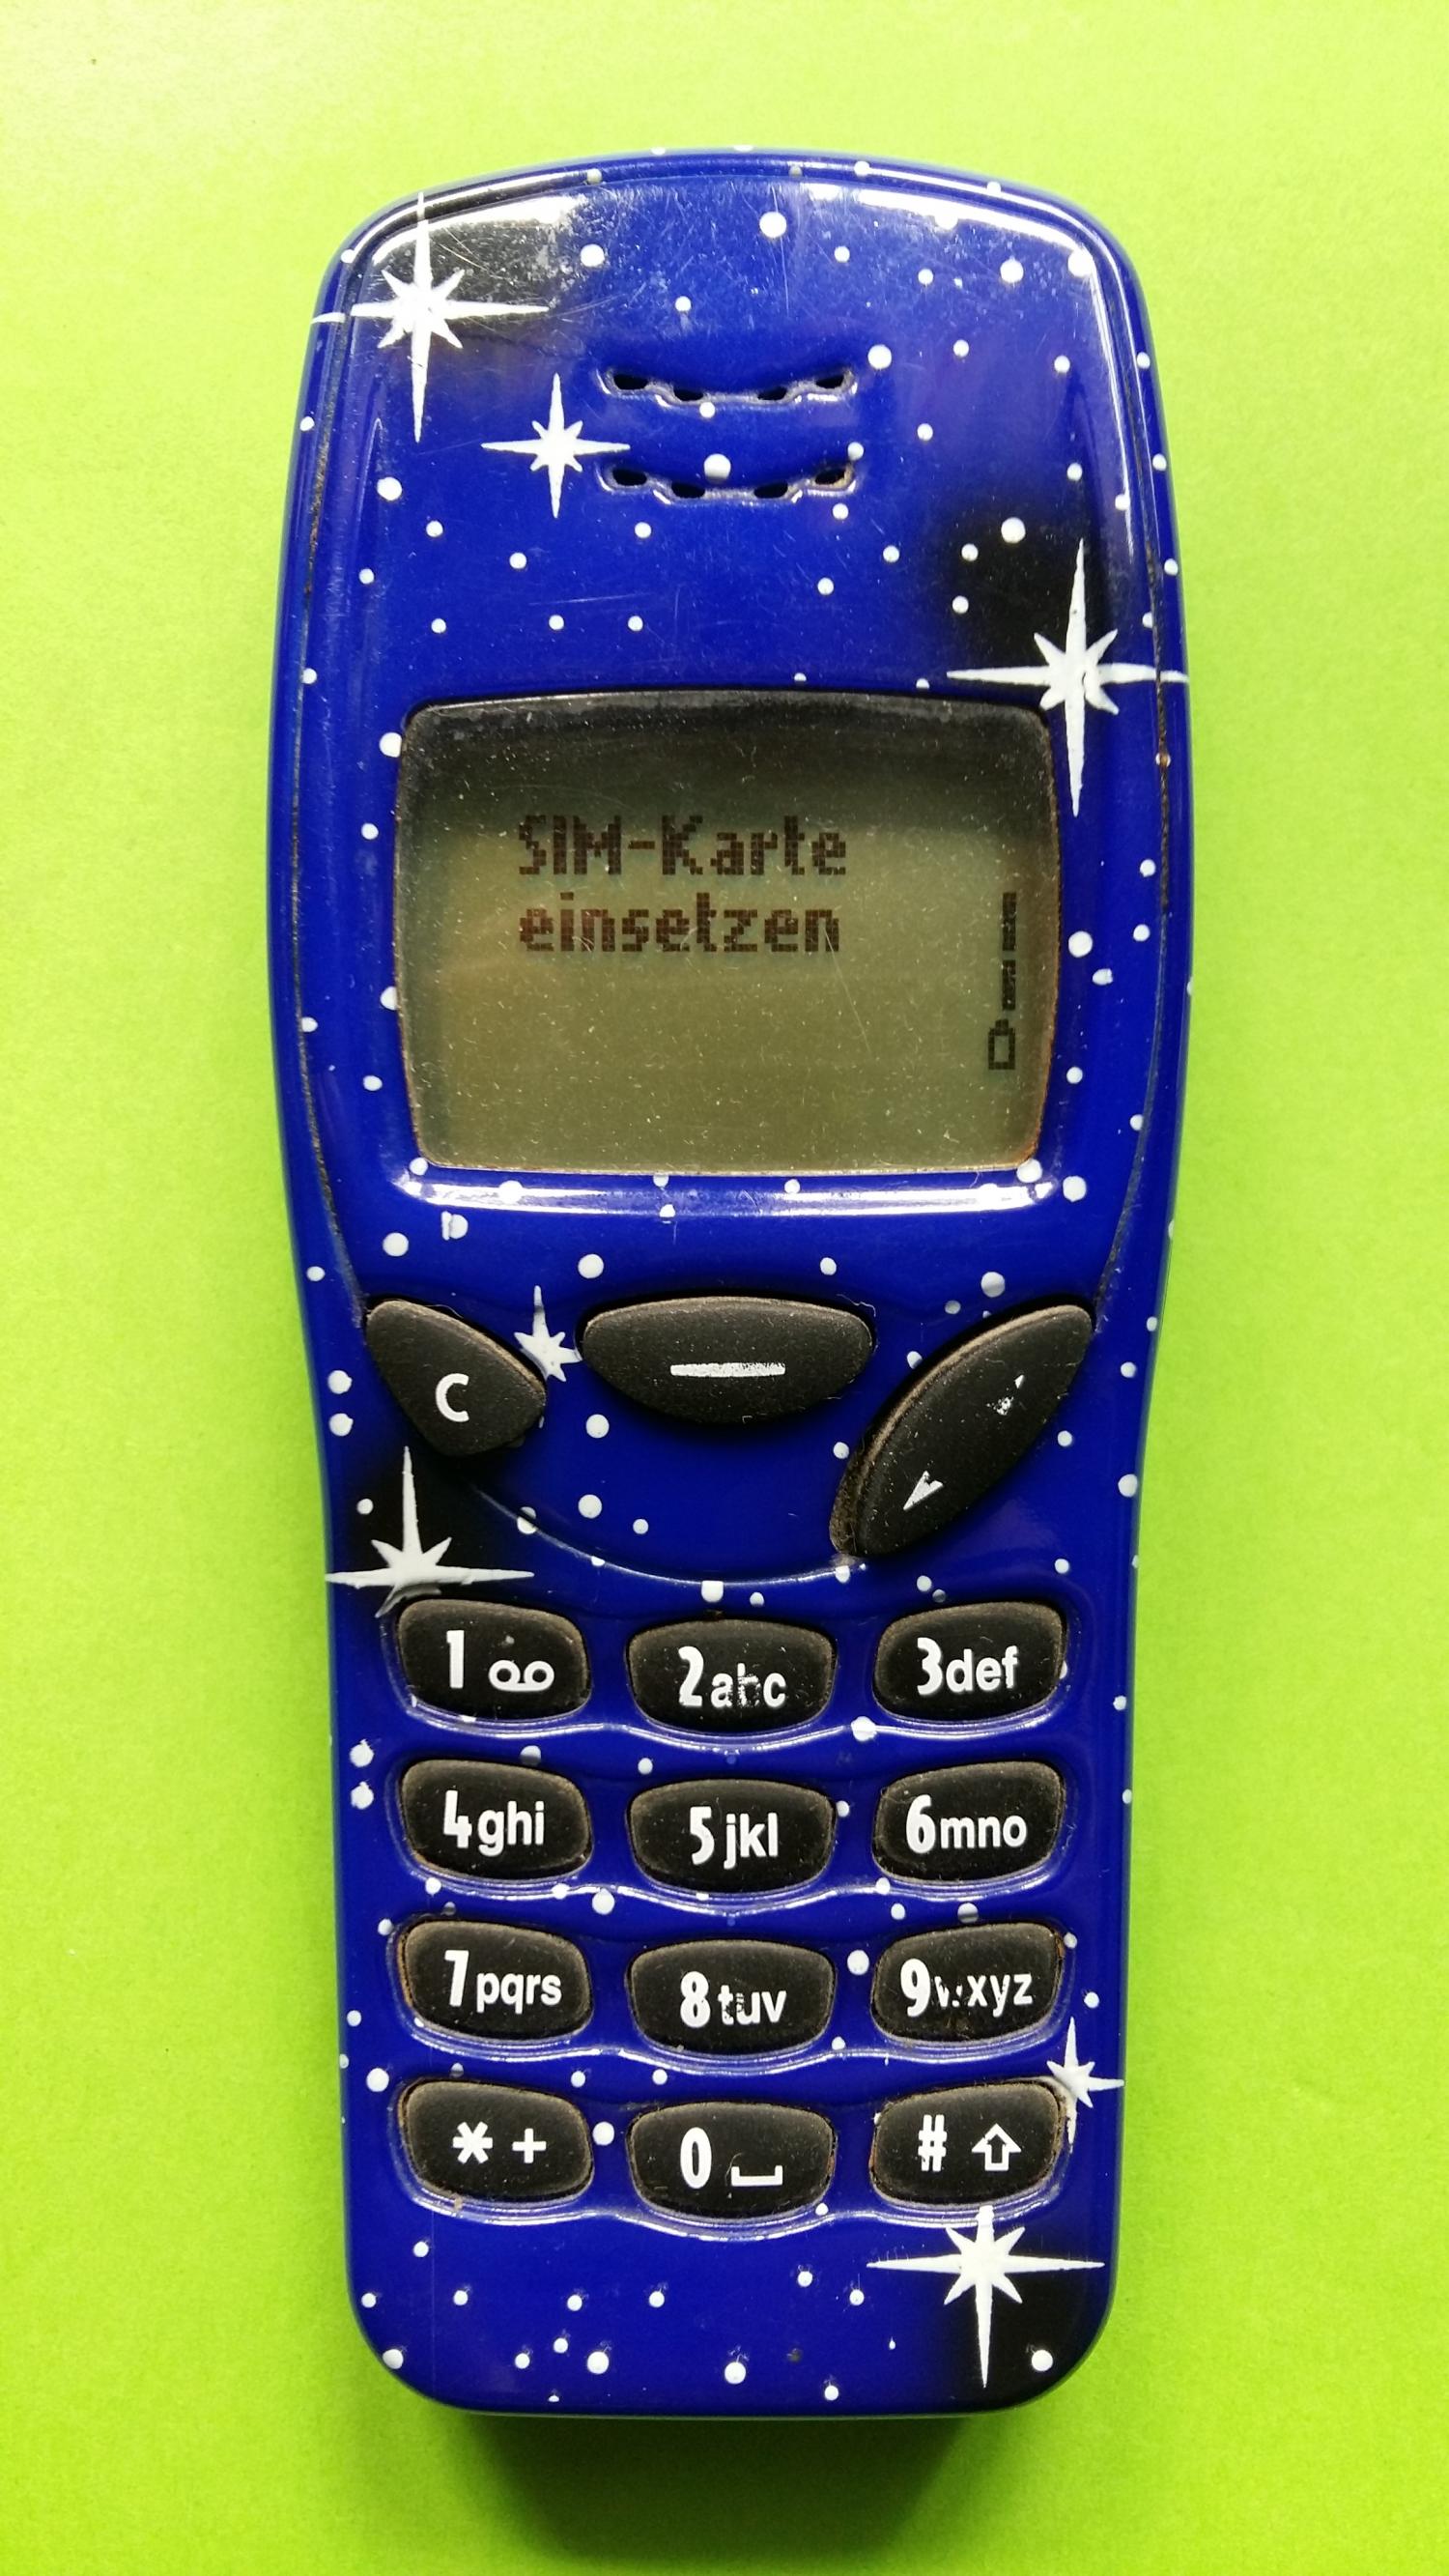 image-7303119-Nokia 3210 (1)1.jpg